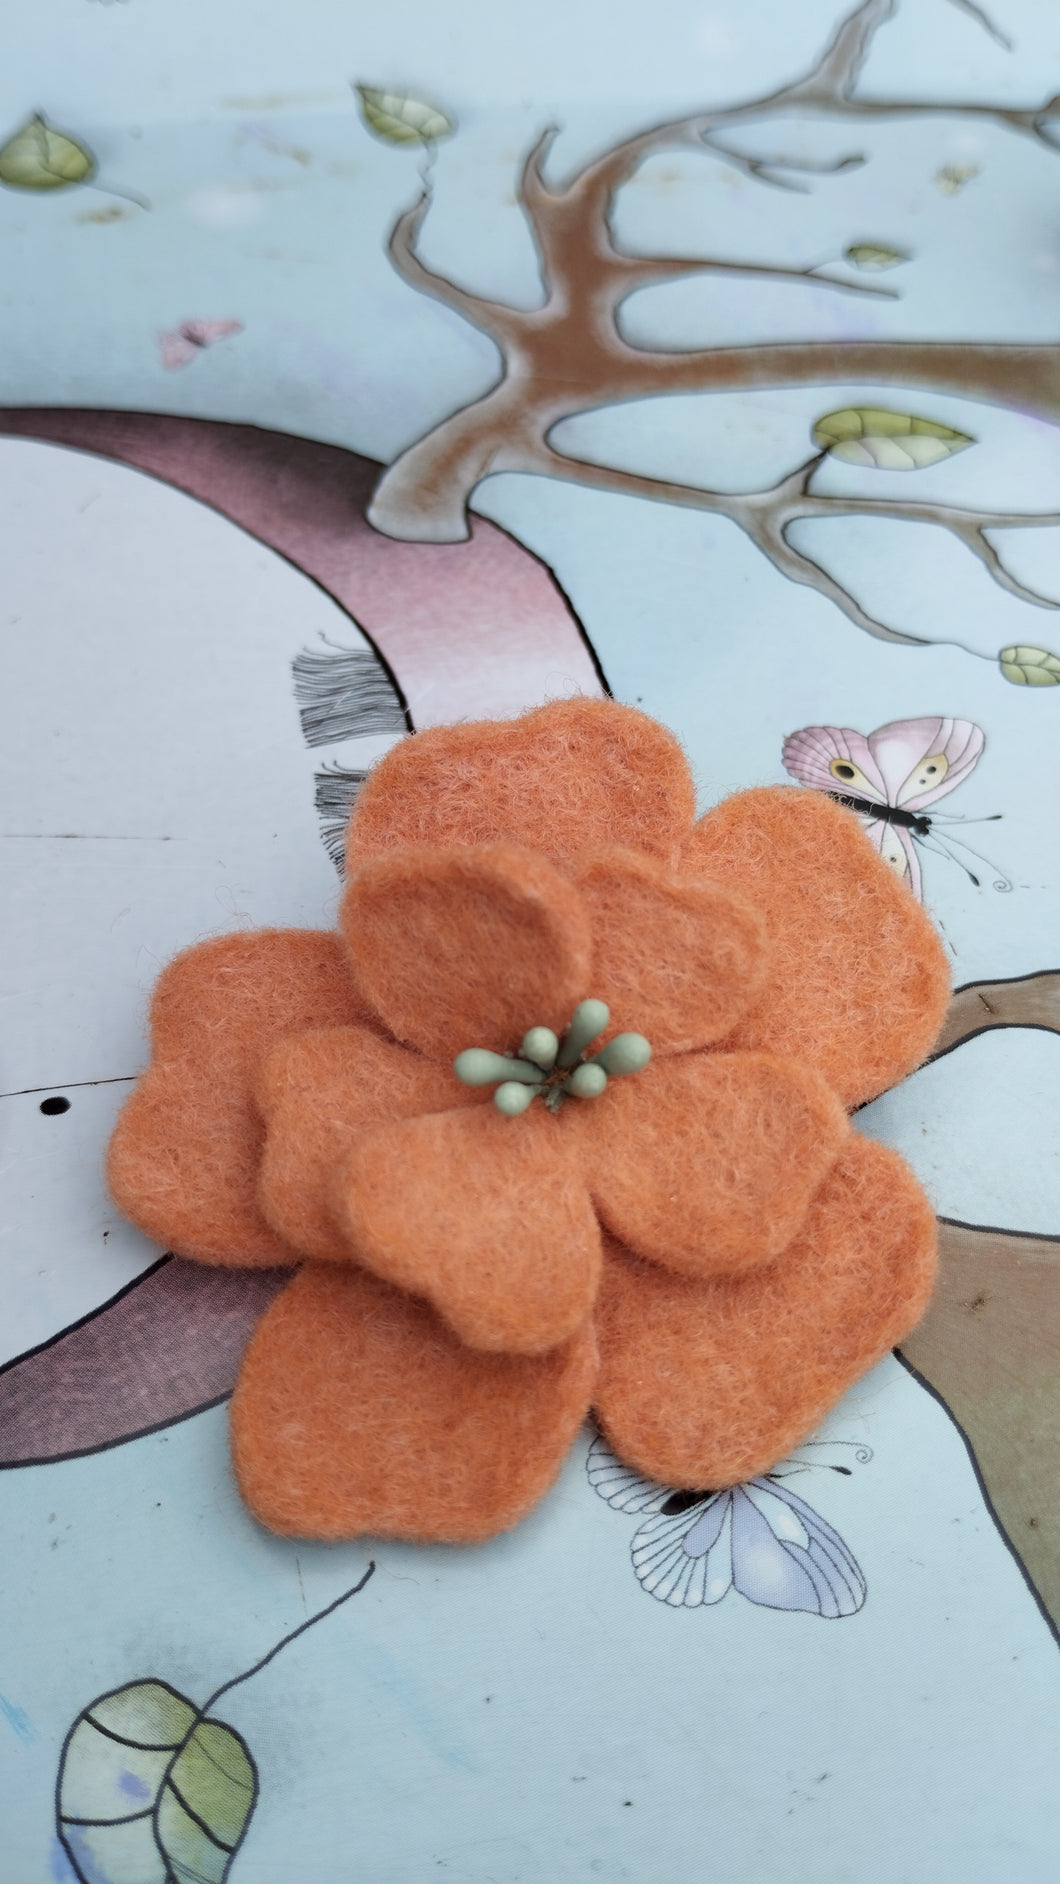 barrette fleur d'aubépine corail (teinture végétale)